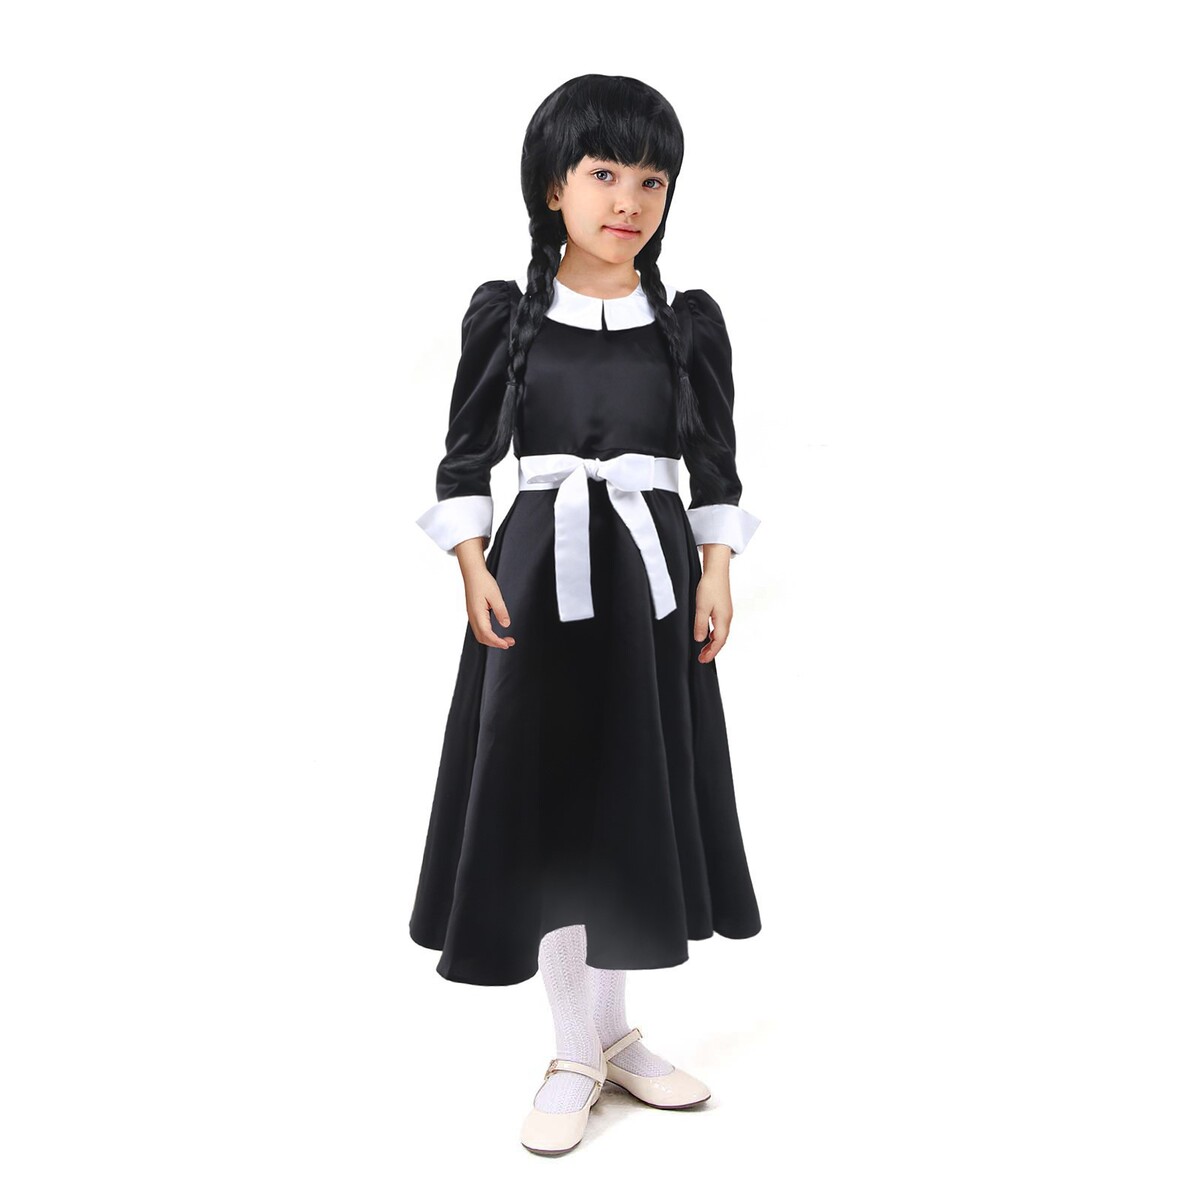 Карнавальное черное платье с белым воротником,атлас,п/э,р-р42,р158 атлас и аксис т4